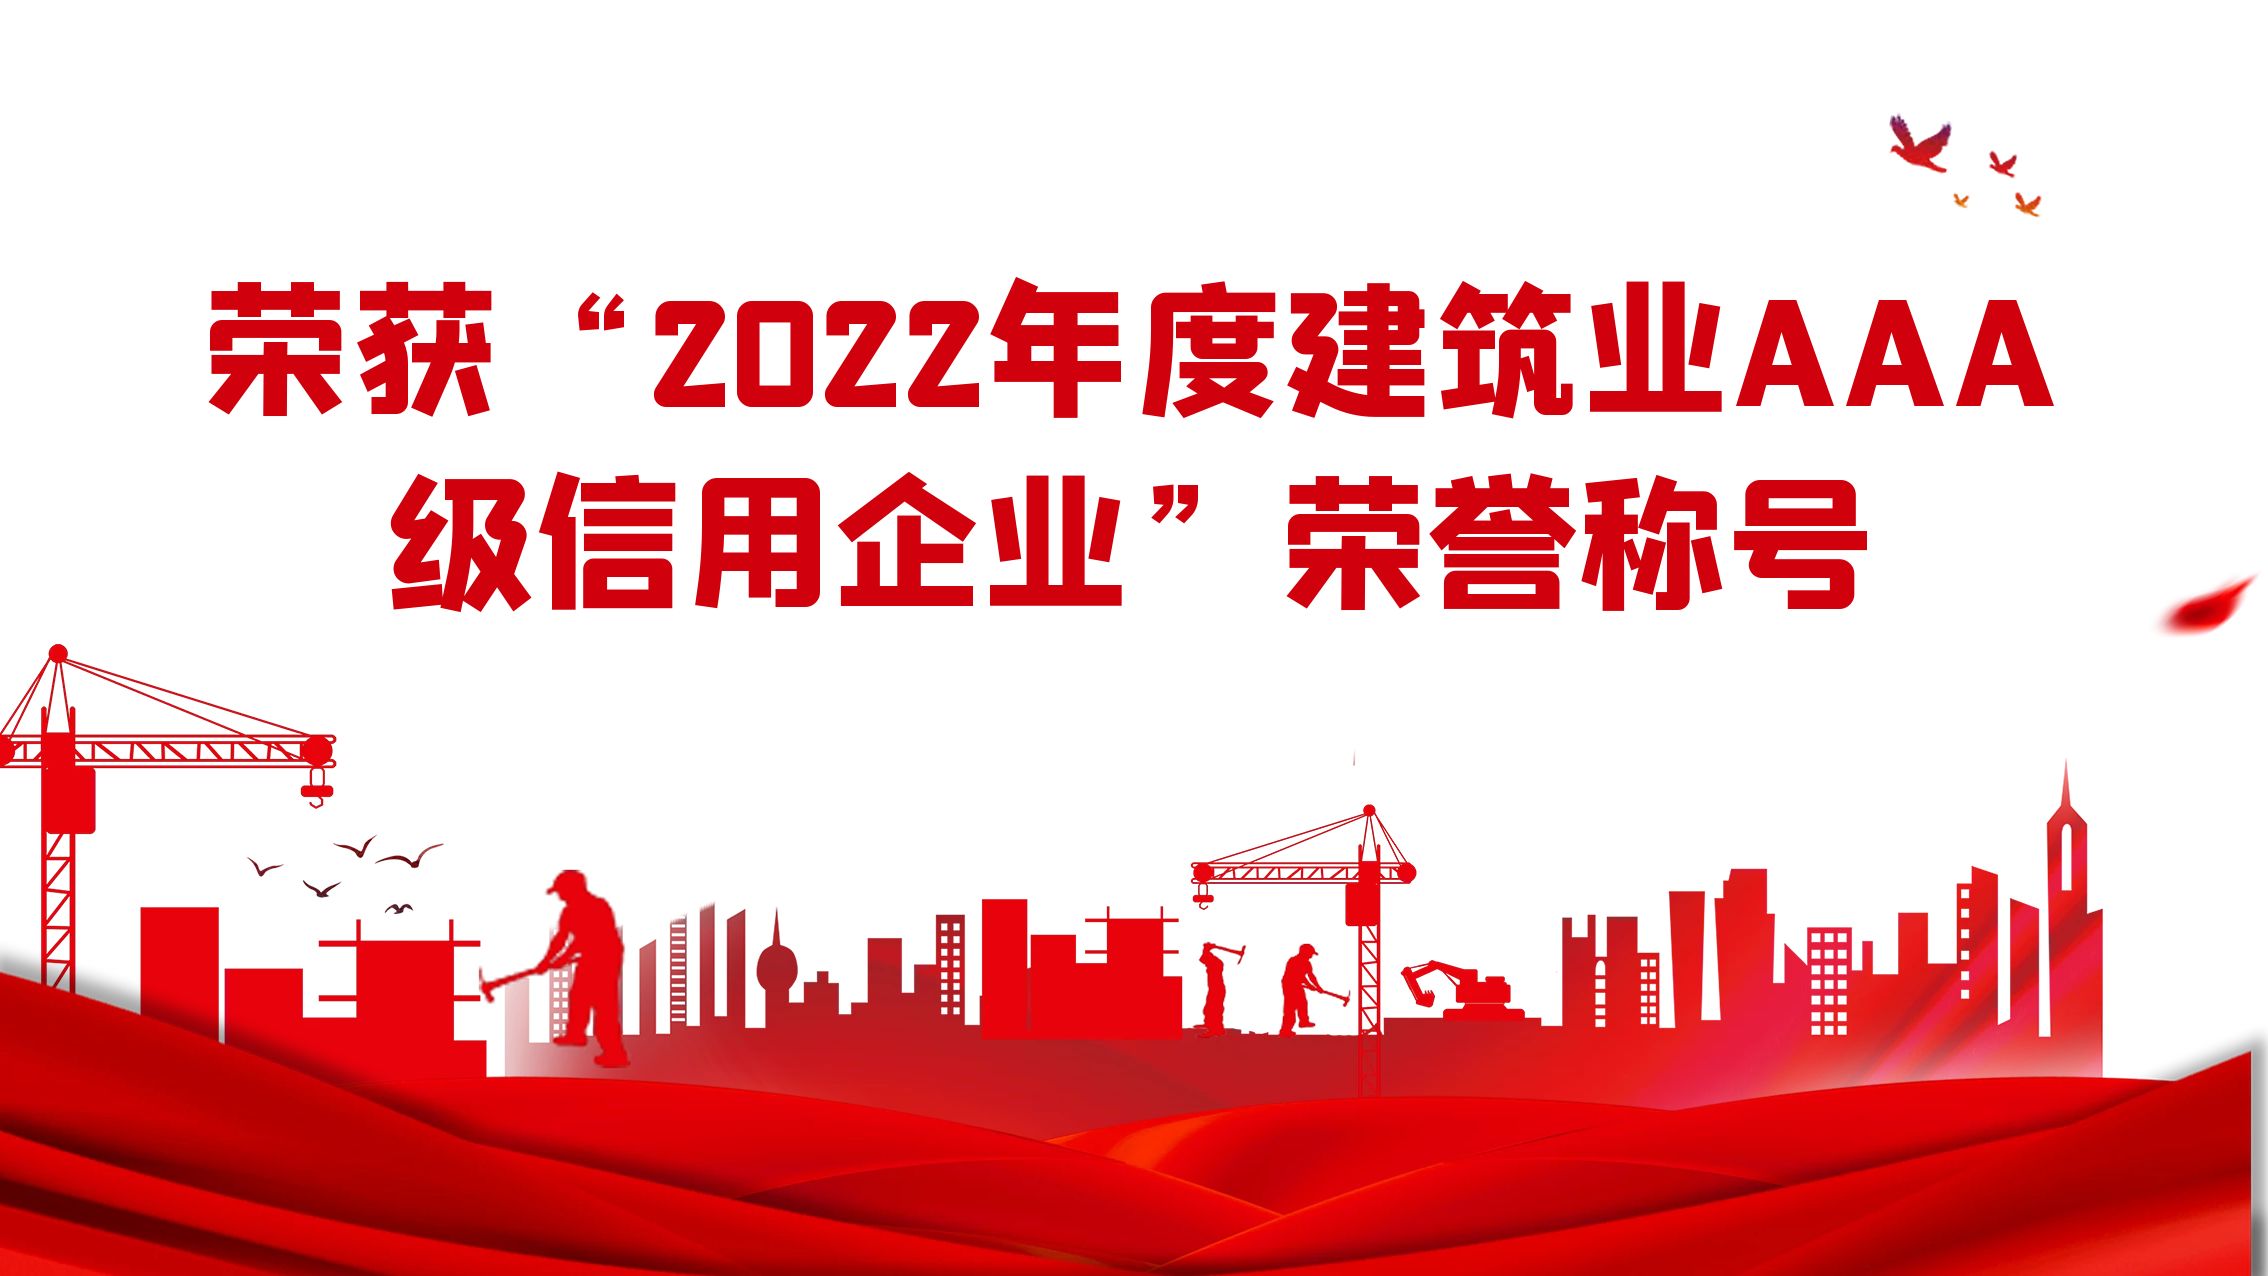 江苏住建荣获“2022年度建筑业AAA级信用企业”荣誉称号